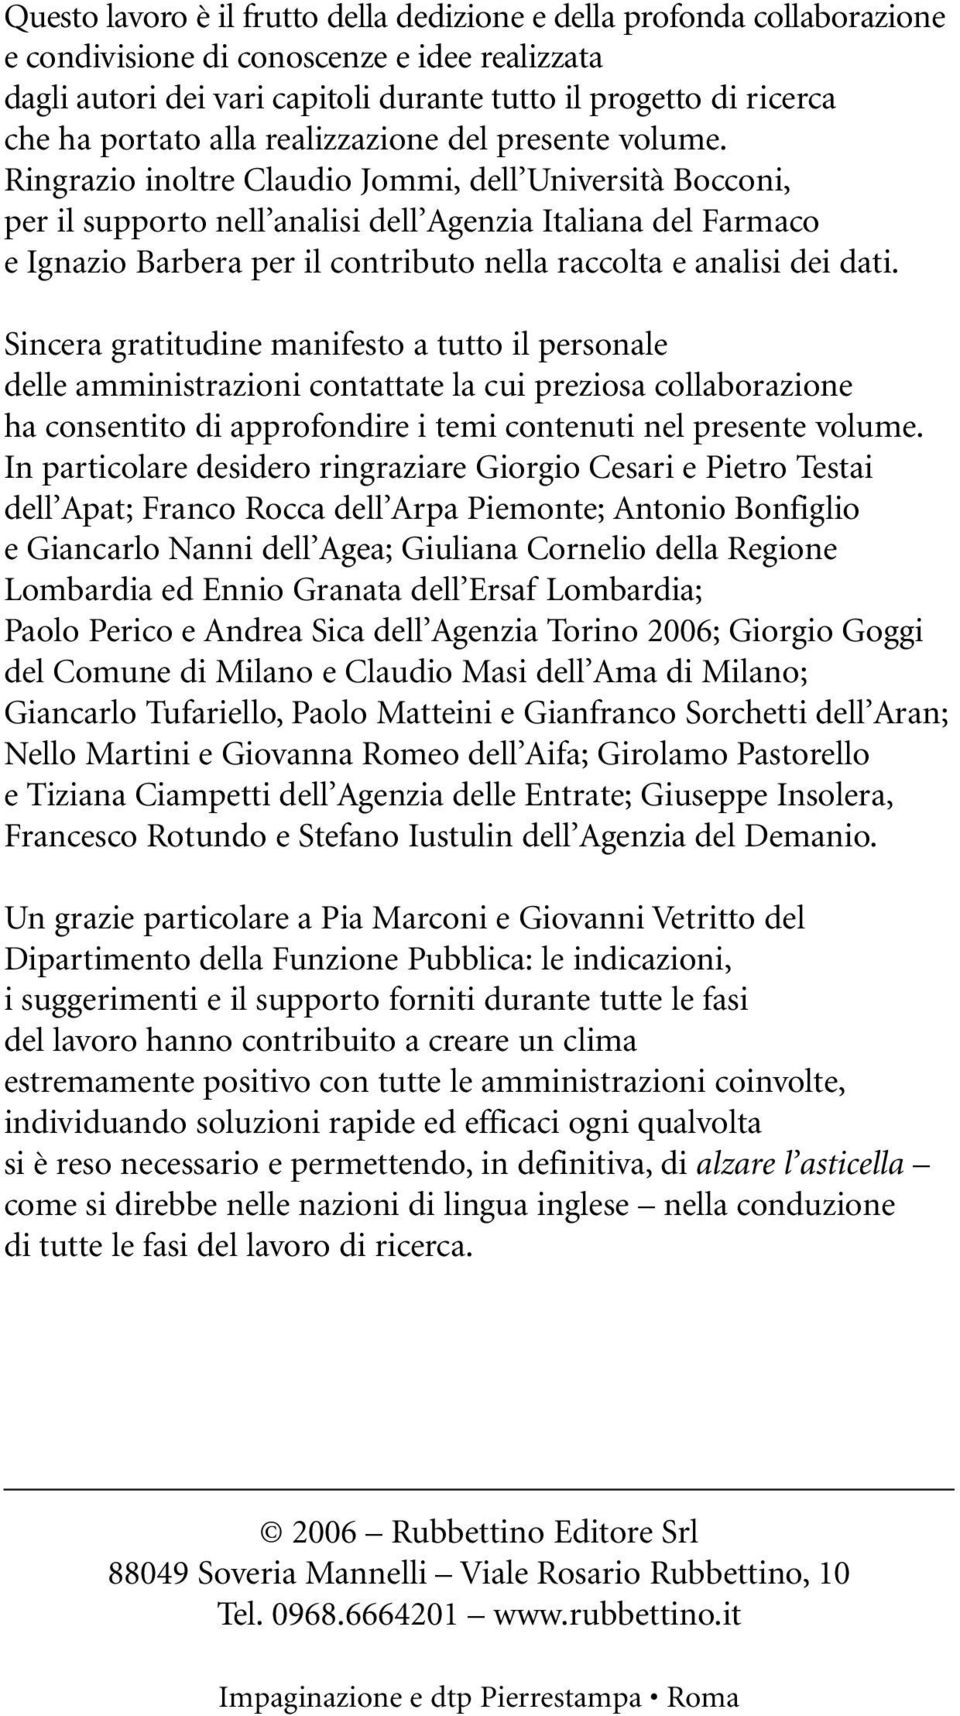 Ringrazio inoltre Claudio Jommi, dell Università Bocconi, per il supporto nell analisi dell Agenzia Italiana del Farmaco e Ignazio Barbera per il contributo nella raccolta e analisi dei dati.